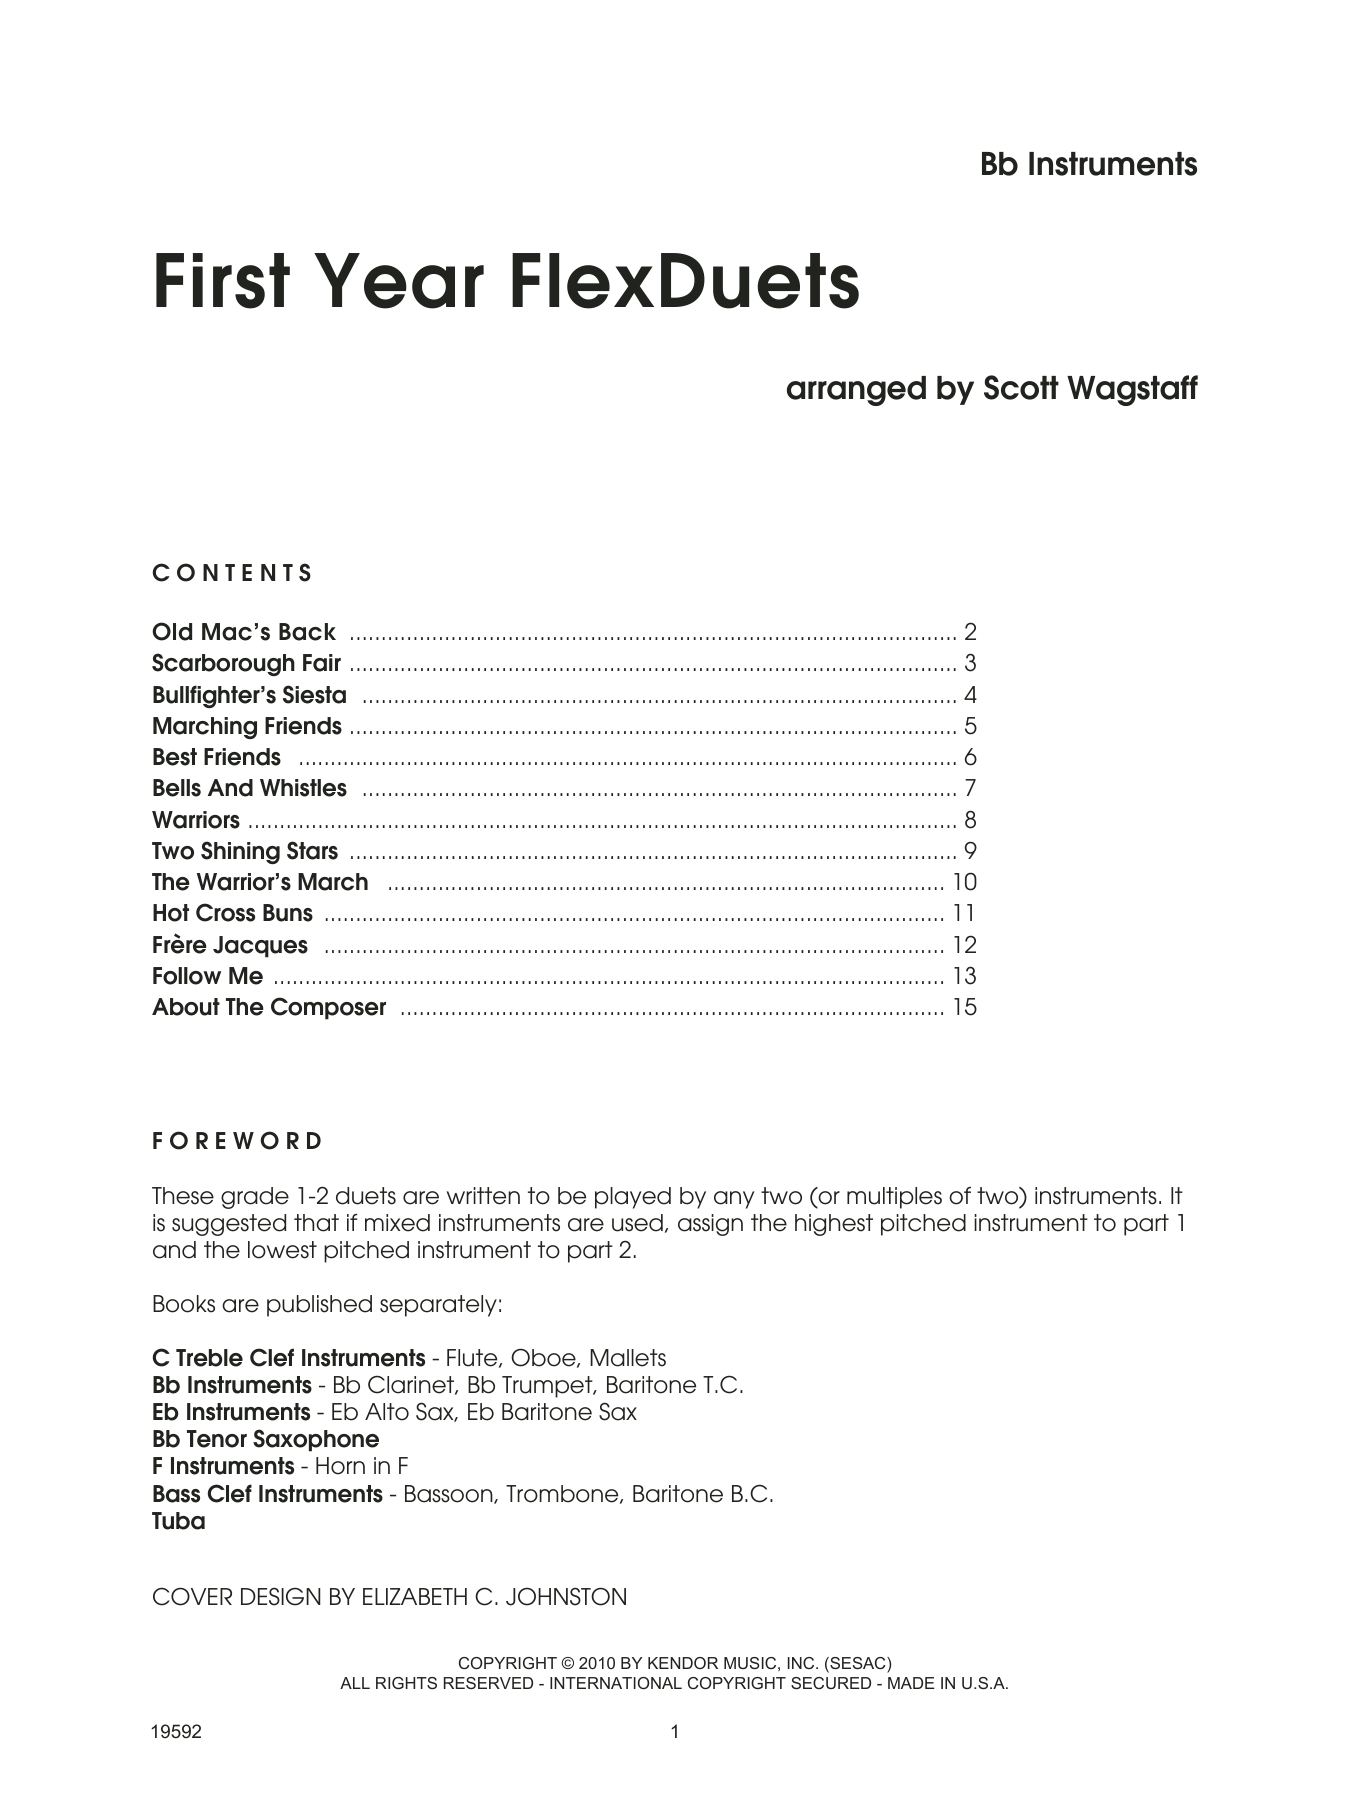 First Year FlexDuets - Bb Instruments (Woodwind Ensemble) von Scott Wagstaff